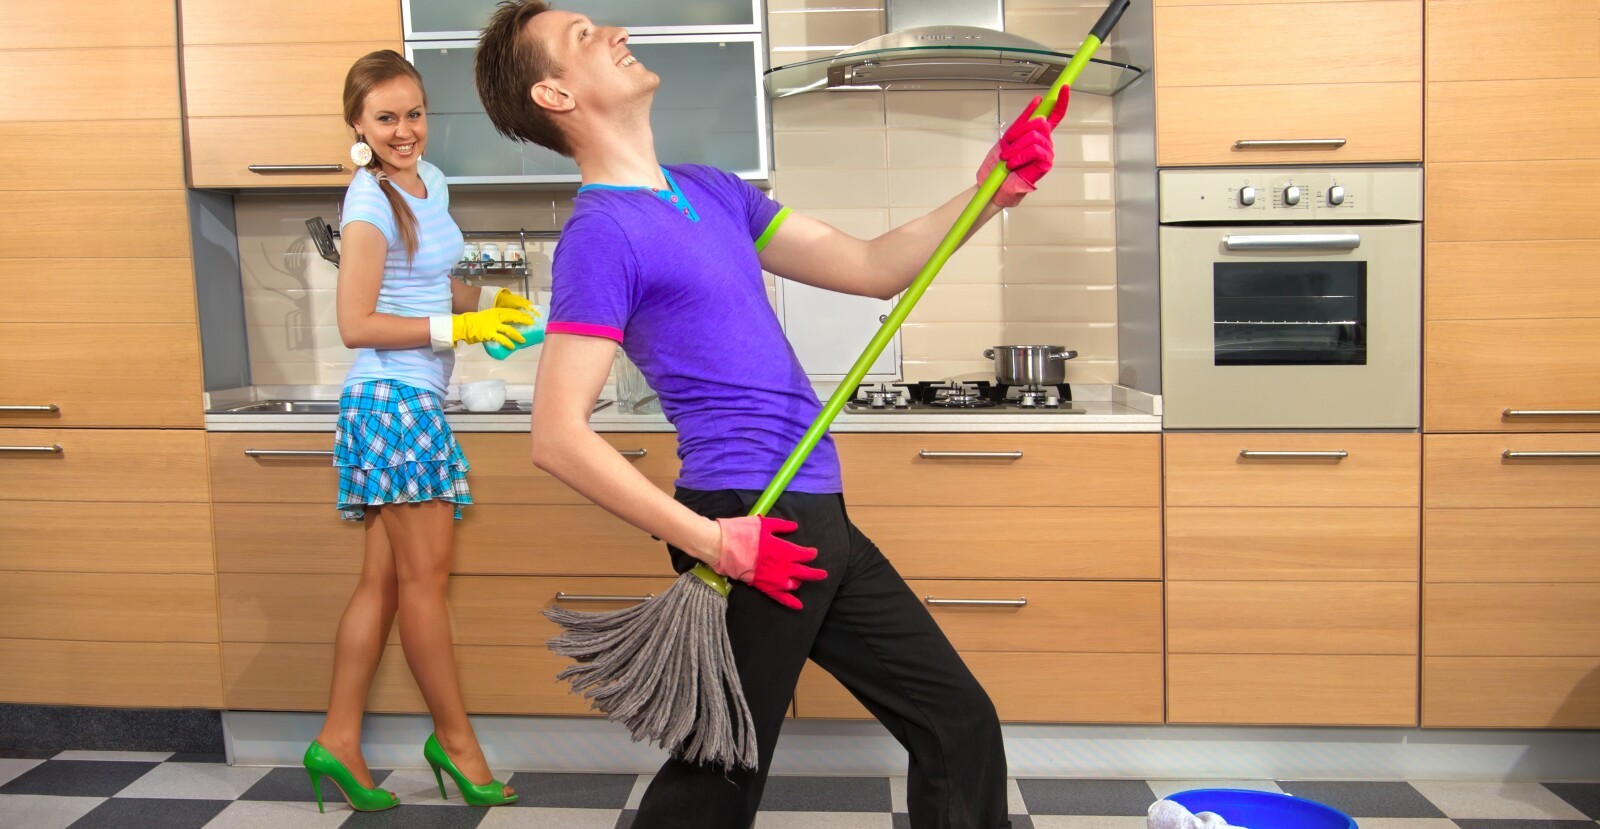 Мужик моет пол. Девушка с парнем убираются. Мытье пола на кухне. Уборка кухни. Мужчина и женщина убираются в доме.